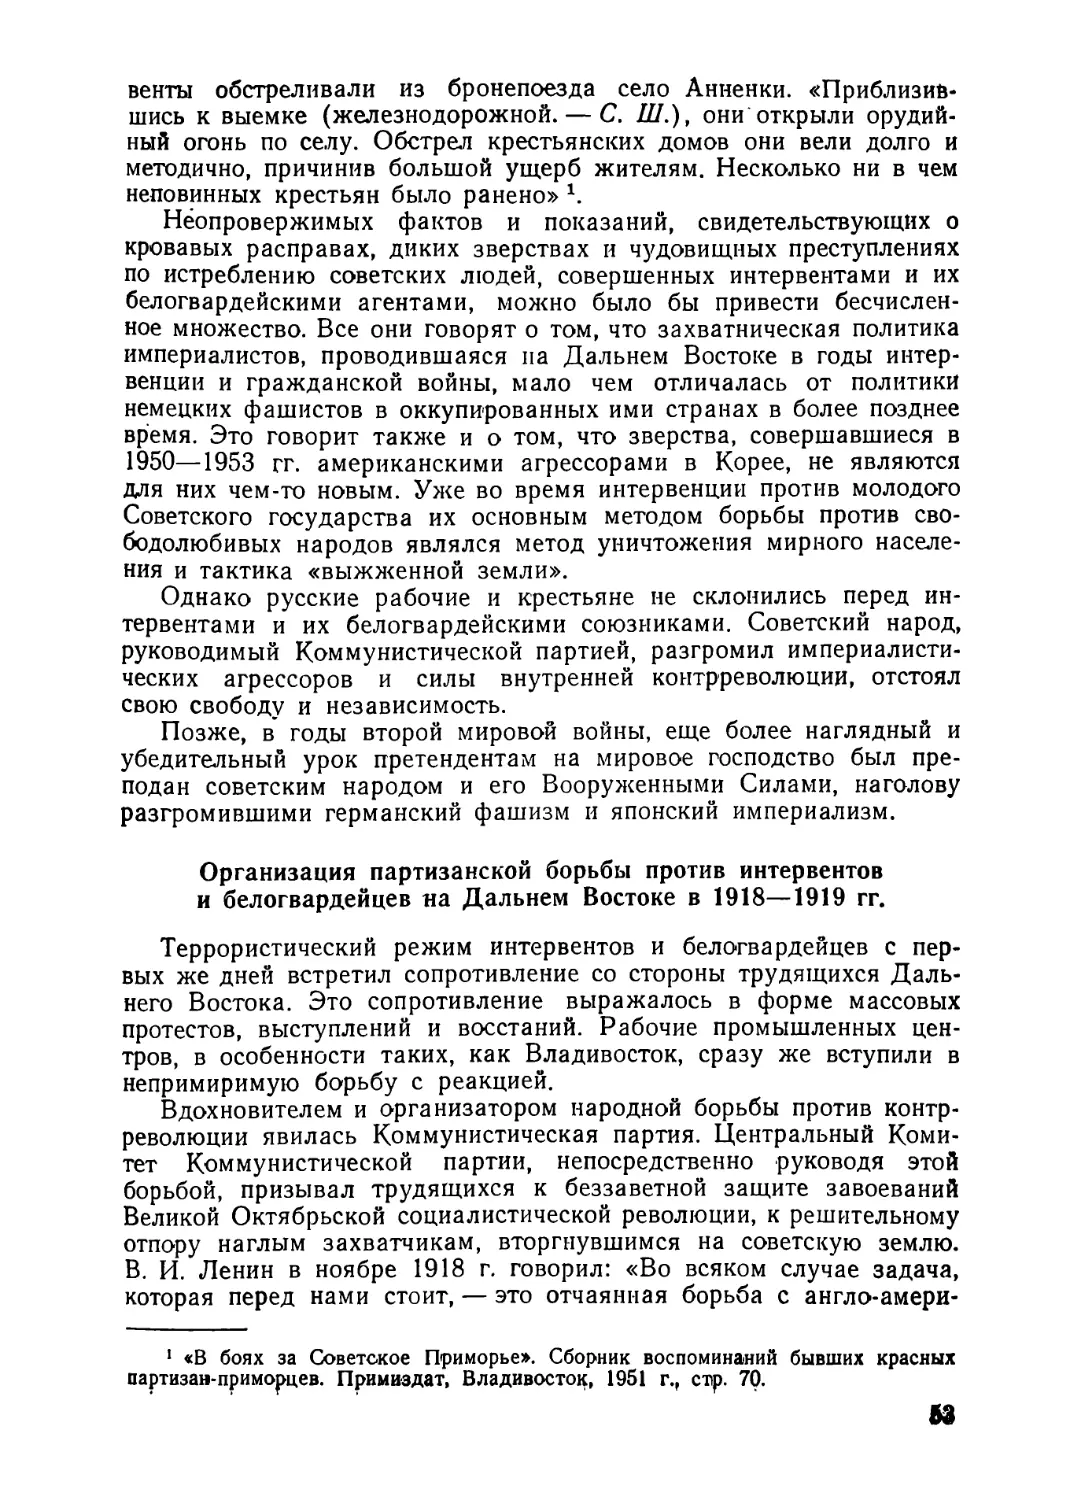 Организация партизанской борьбы против интервентов и белогвардейцев на Дальнем Востоке в 1918—1919 гг.